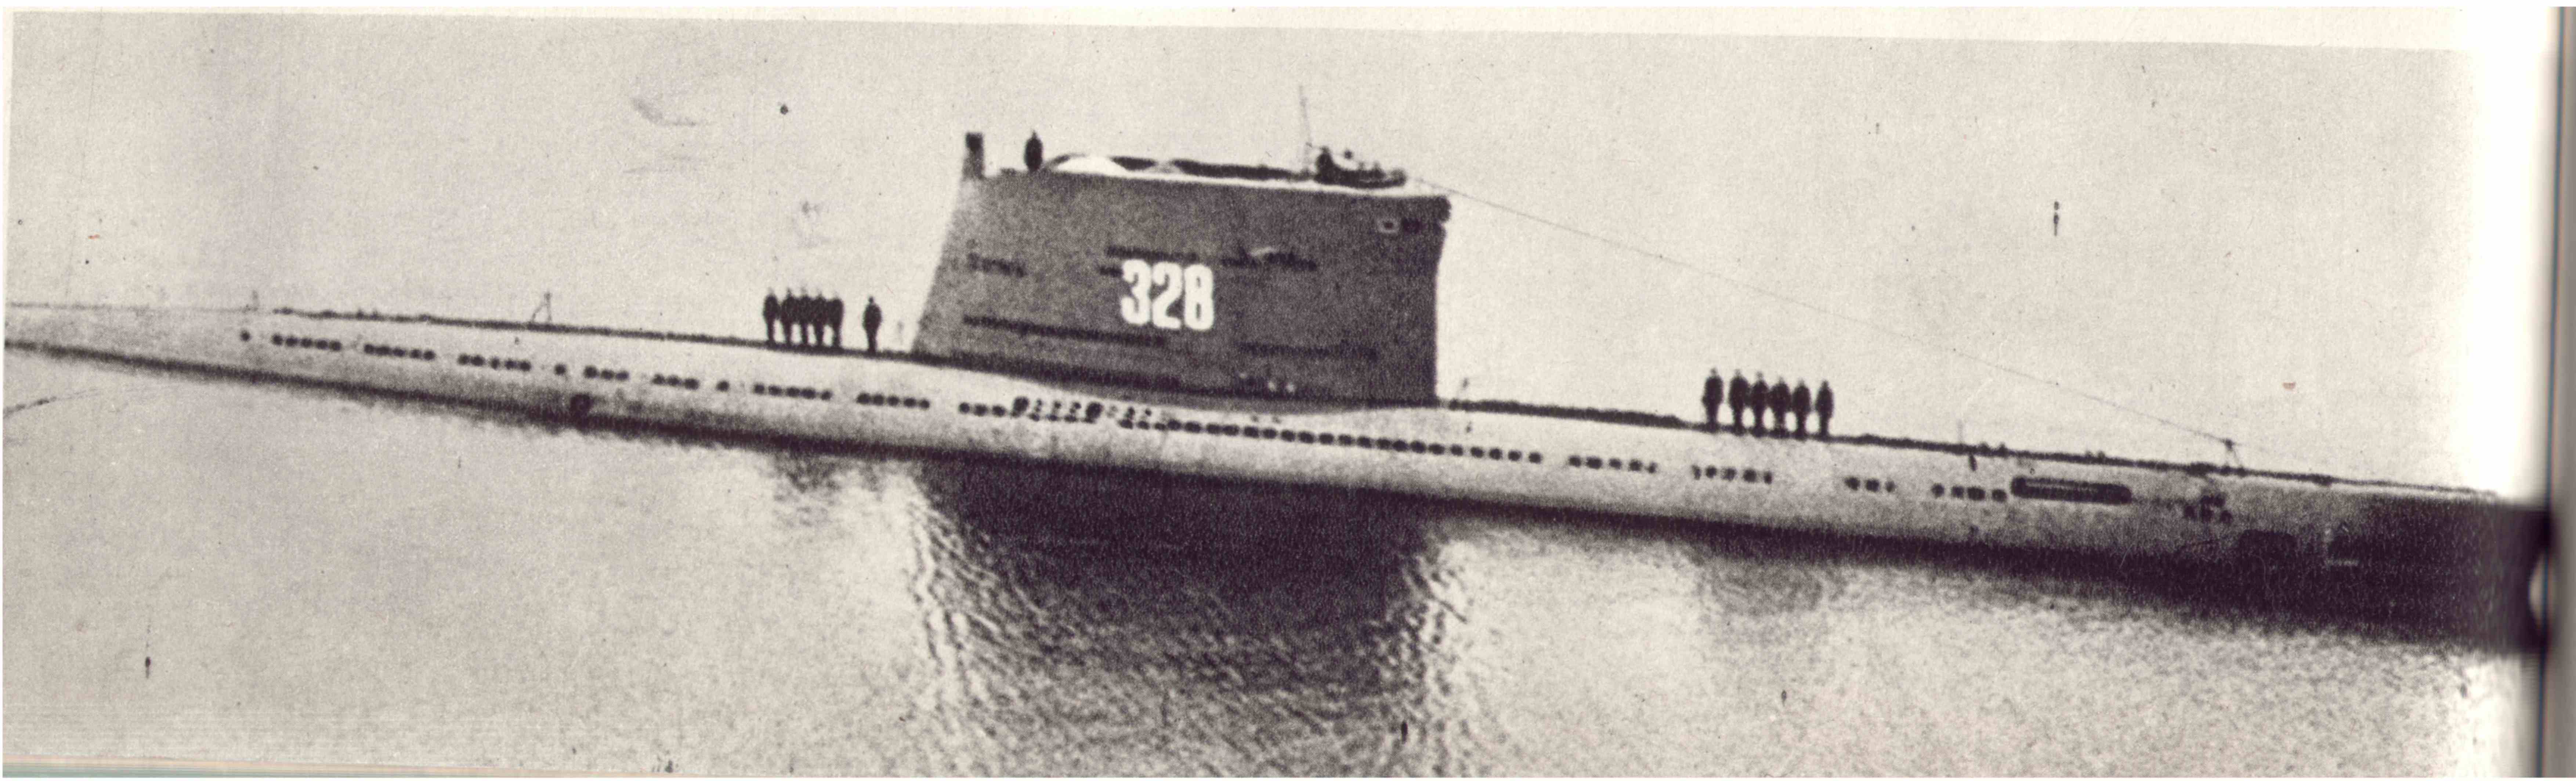 SS 611 Zulu.jpg